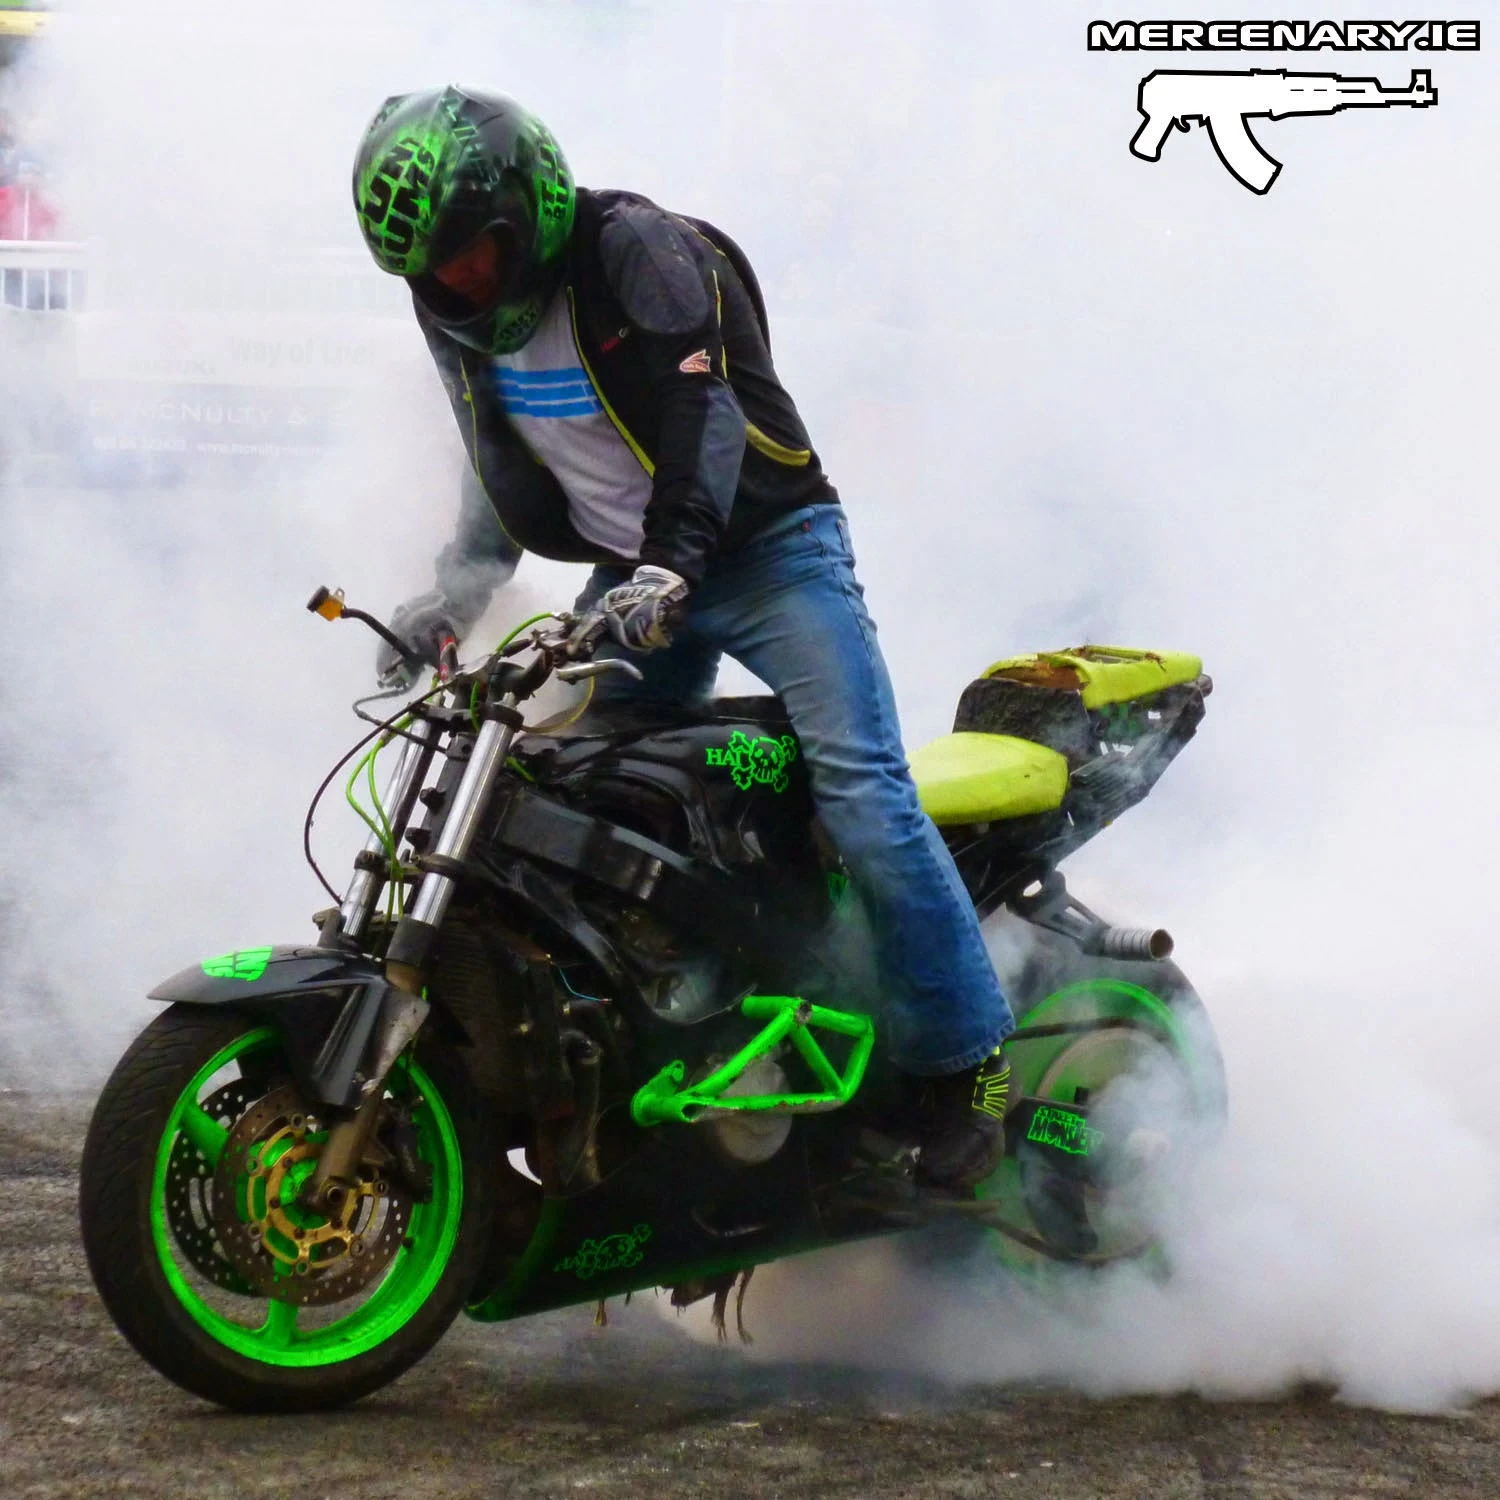 Irish Motorbike and Scooter Show 2015